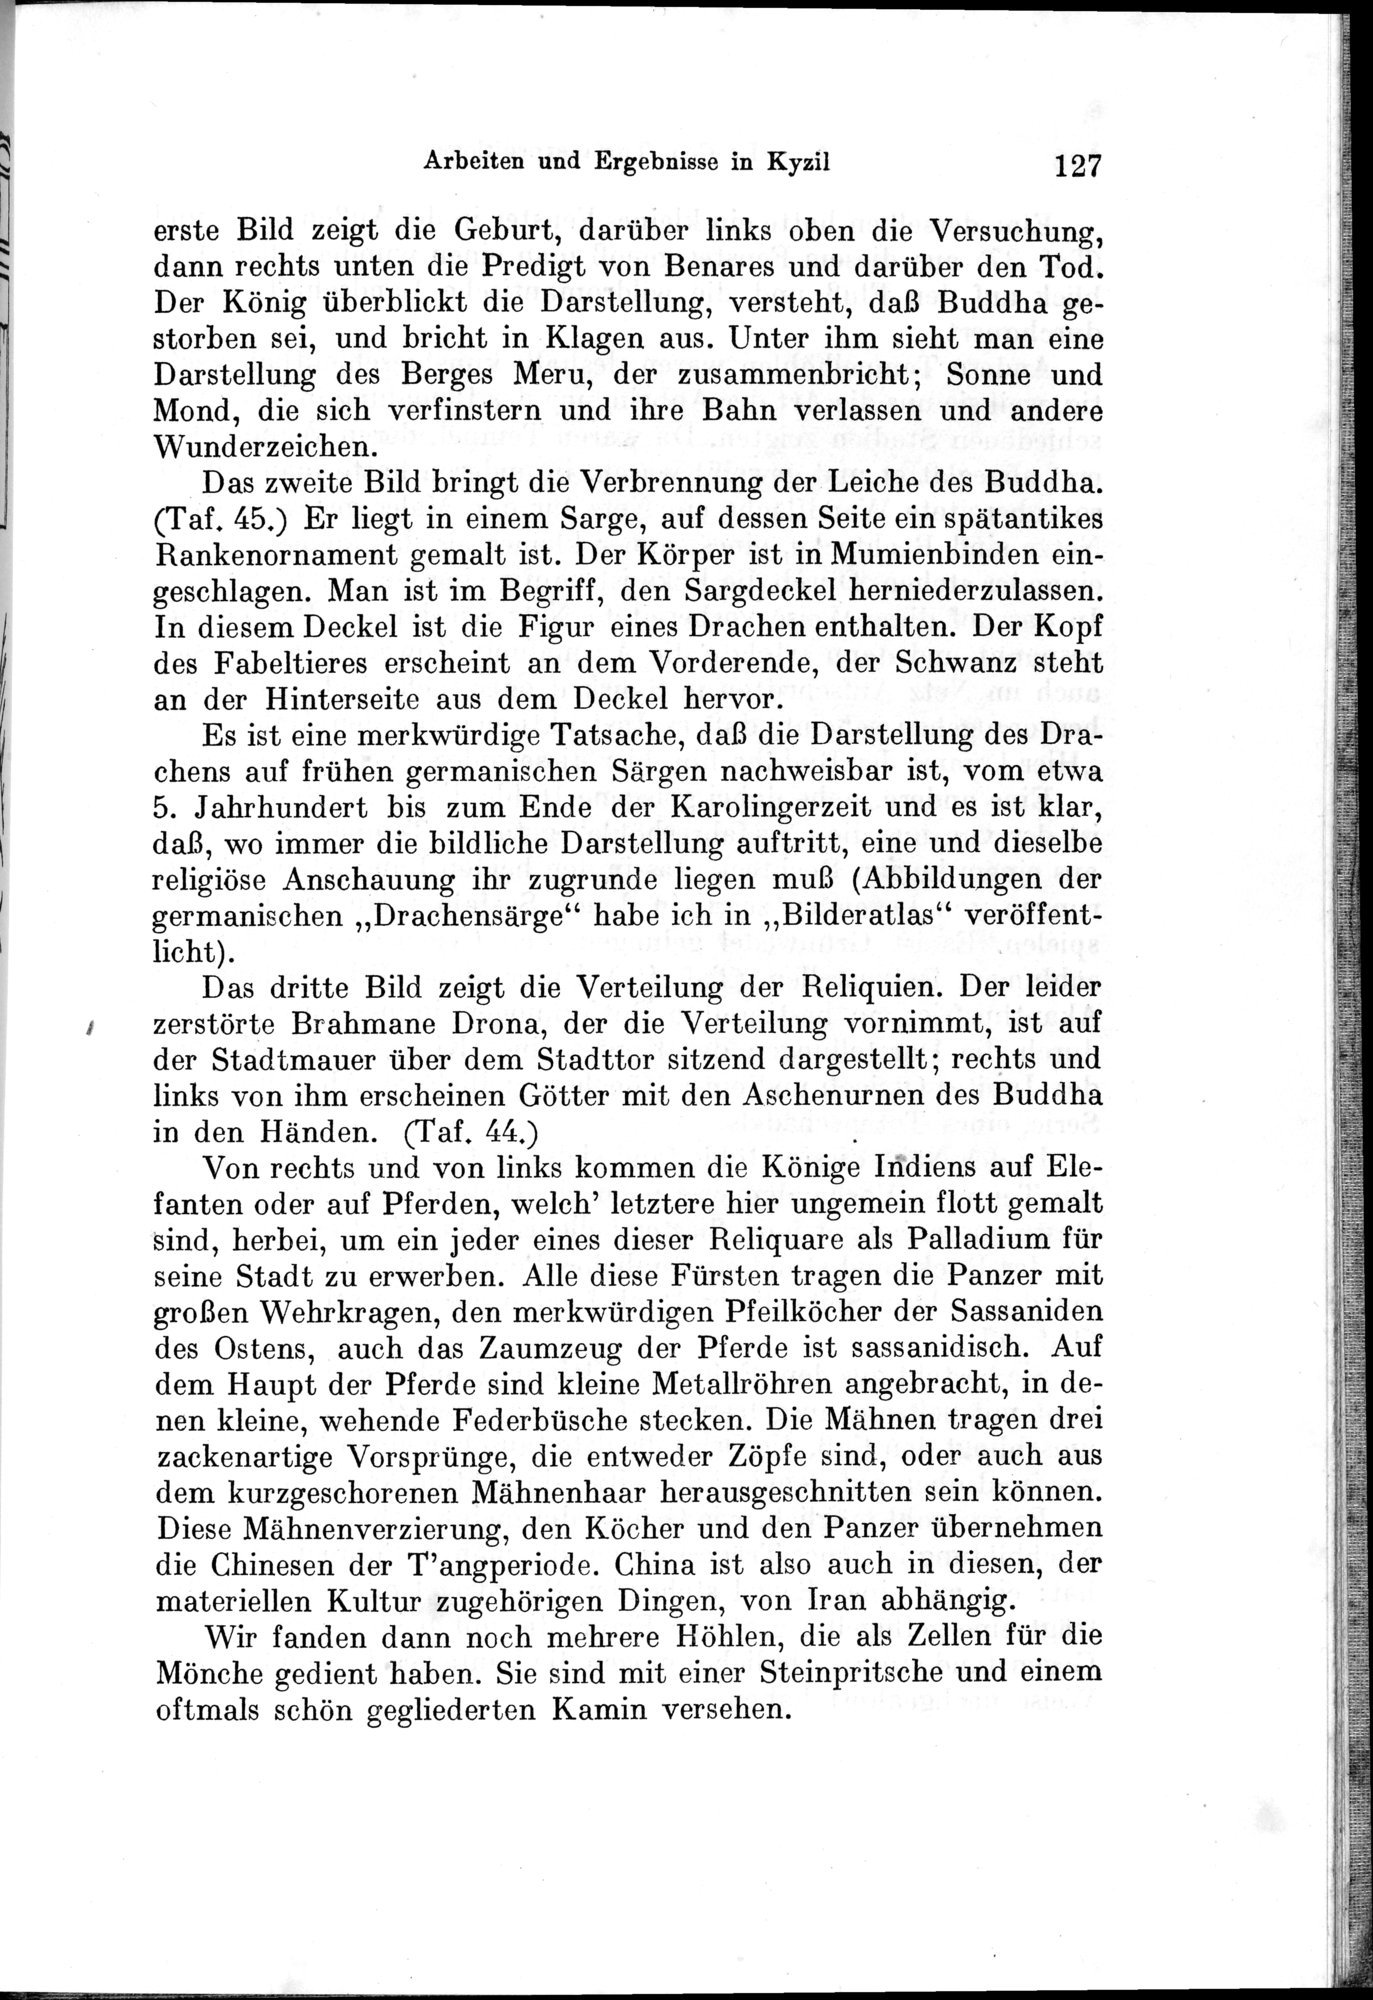 Auf Hellas Spuren in Ostturkistan : vol.1 / Page 183 (Grayscale High Resolution Image)